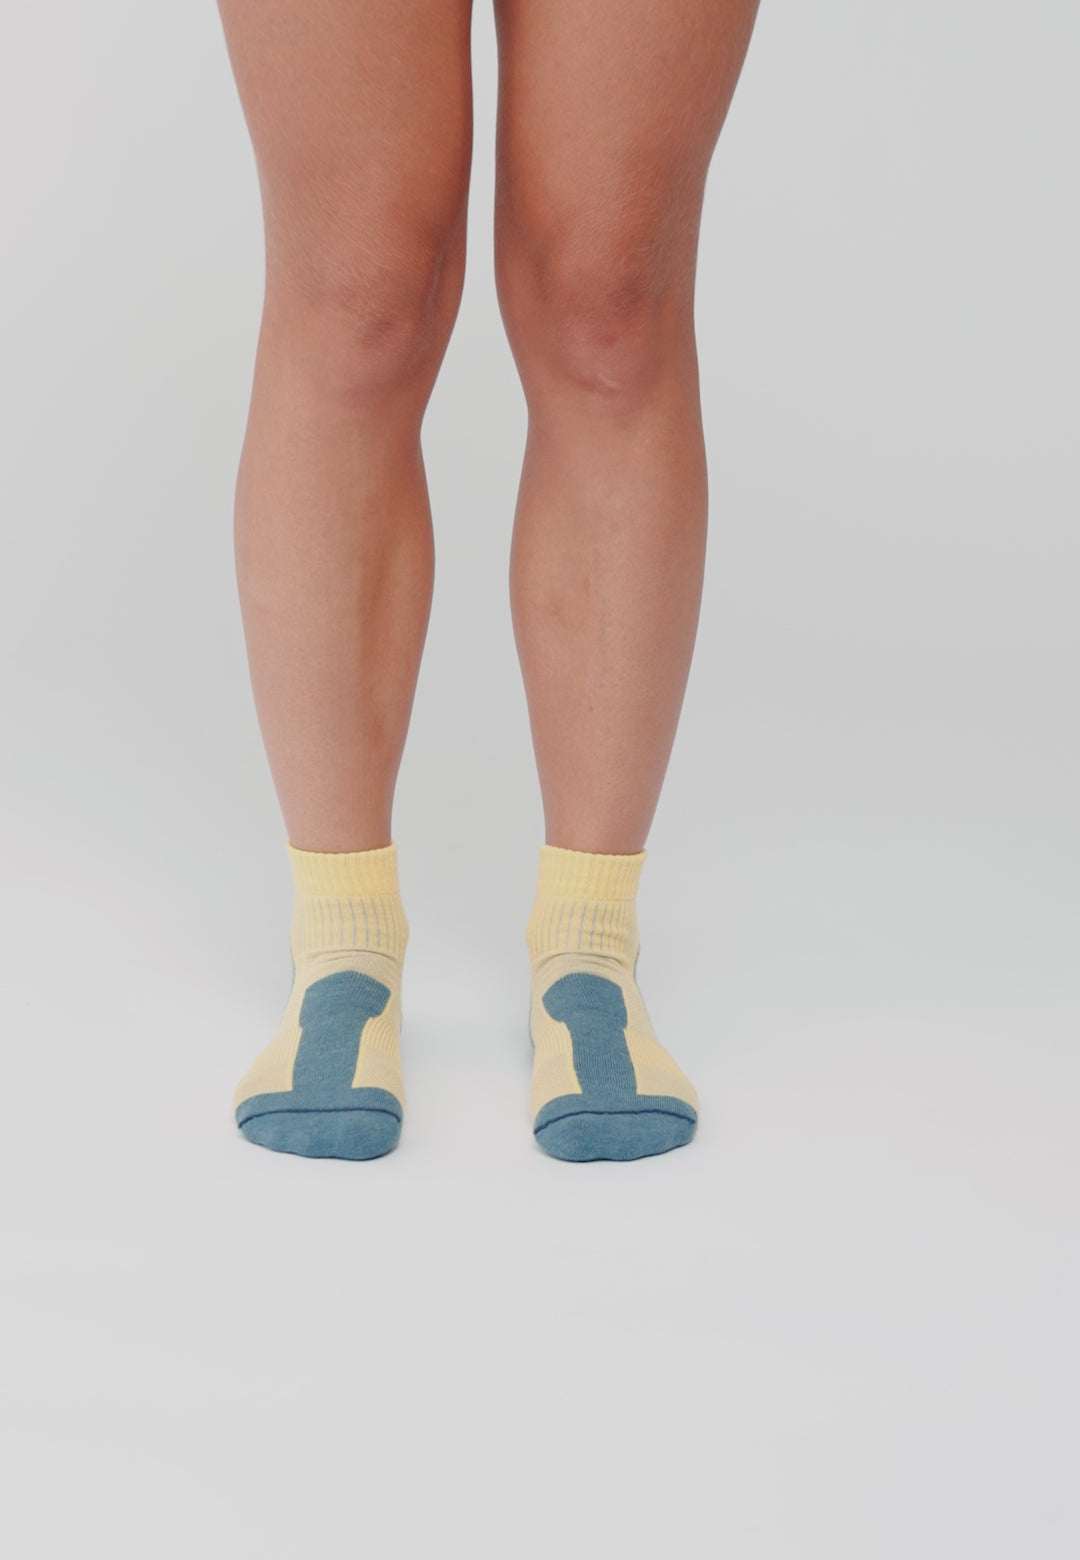 innotree Paquete de 3 calcetines de senderismo de lana merino para hombre,  calcetines de senderismo acolchados micro Crew para senderismo que absorben